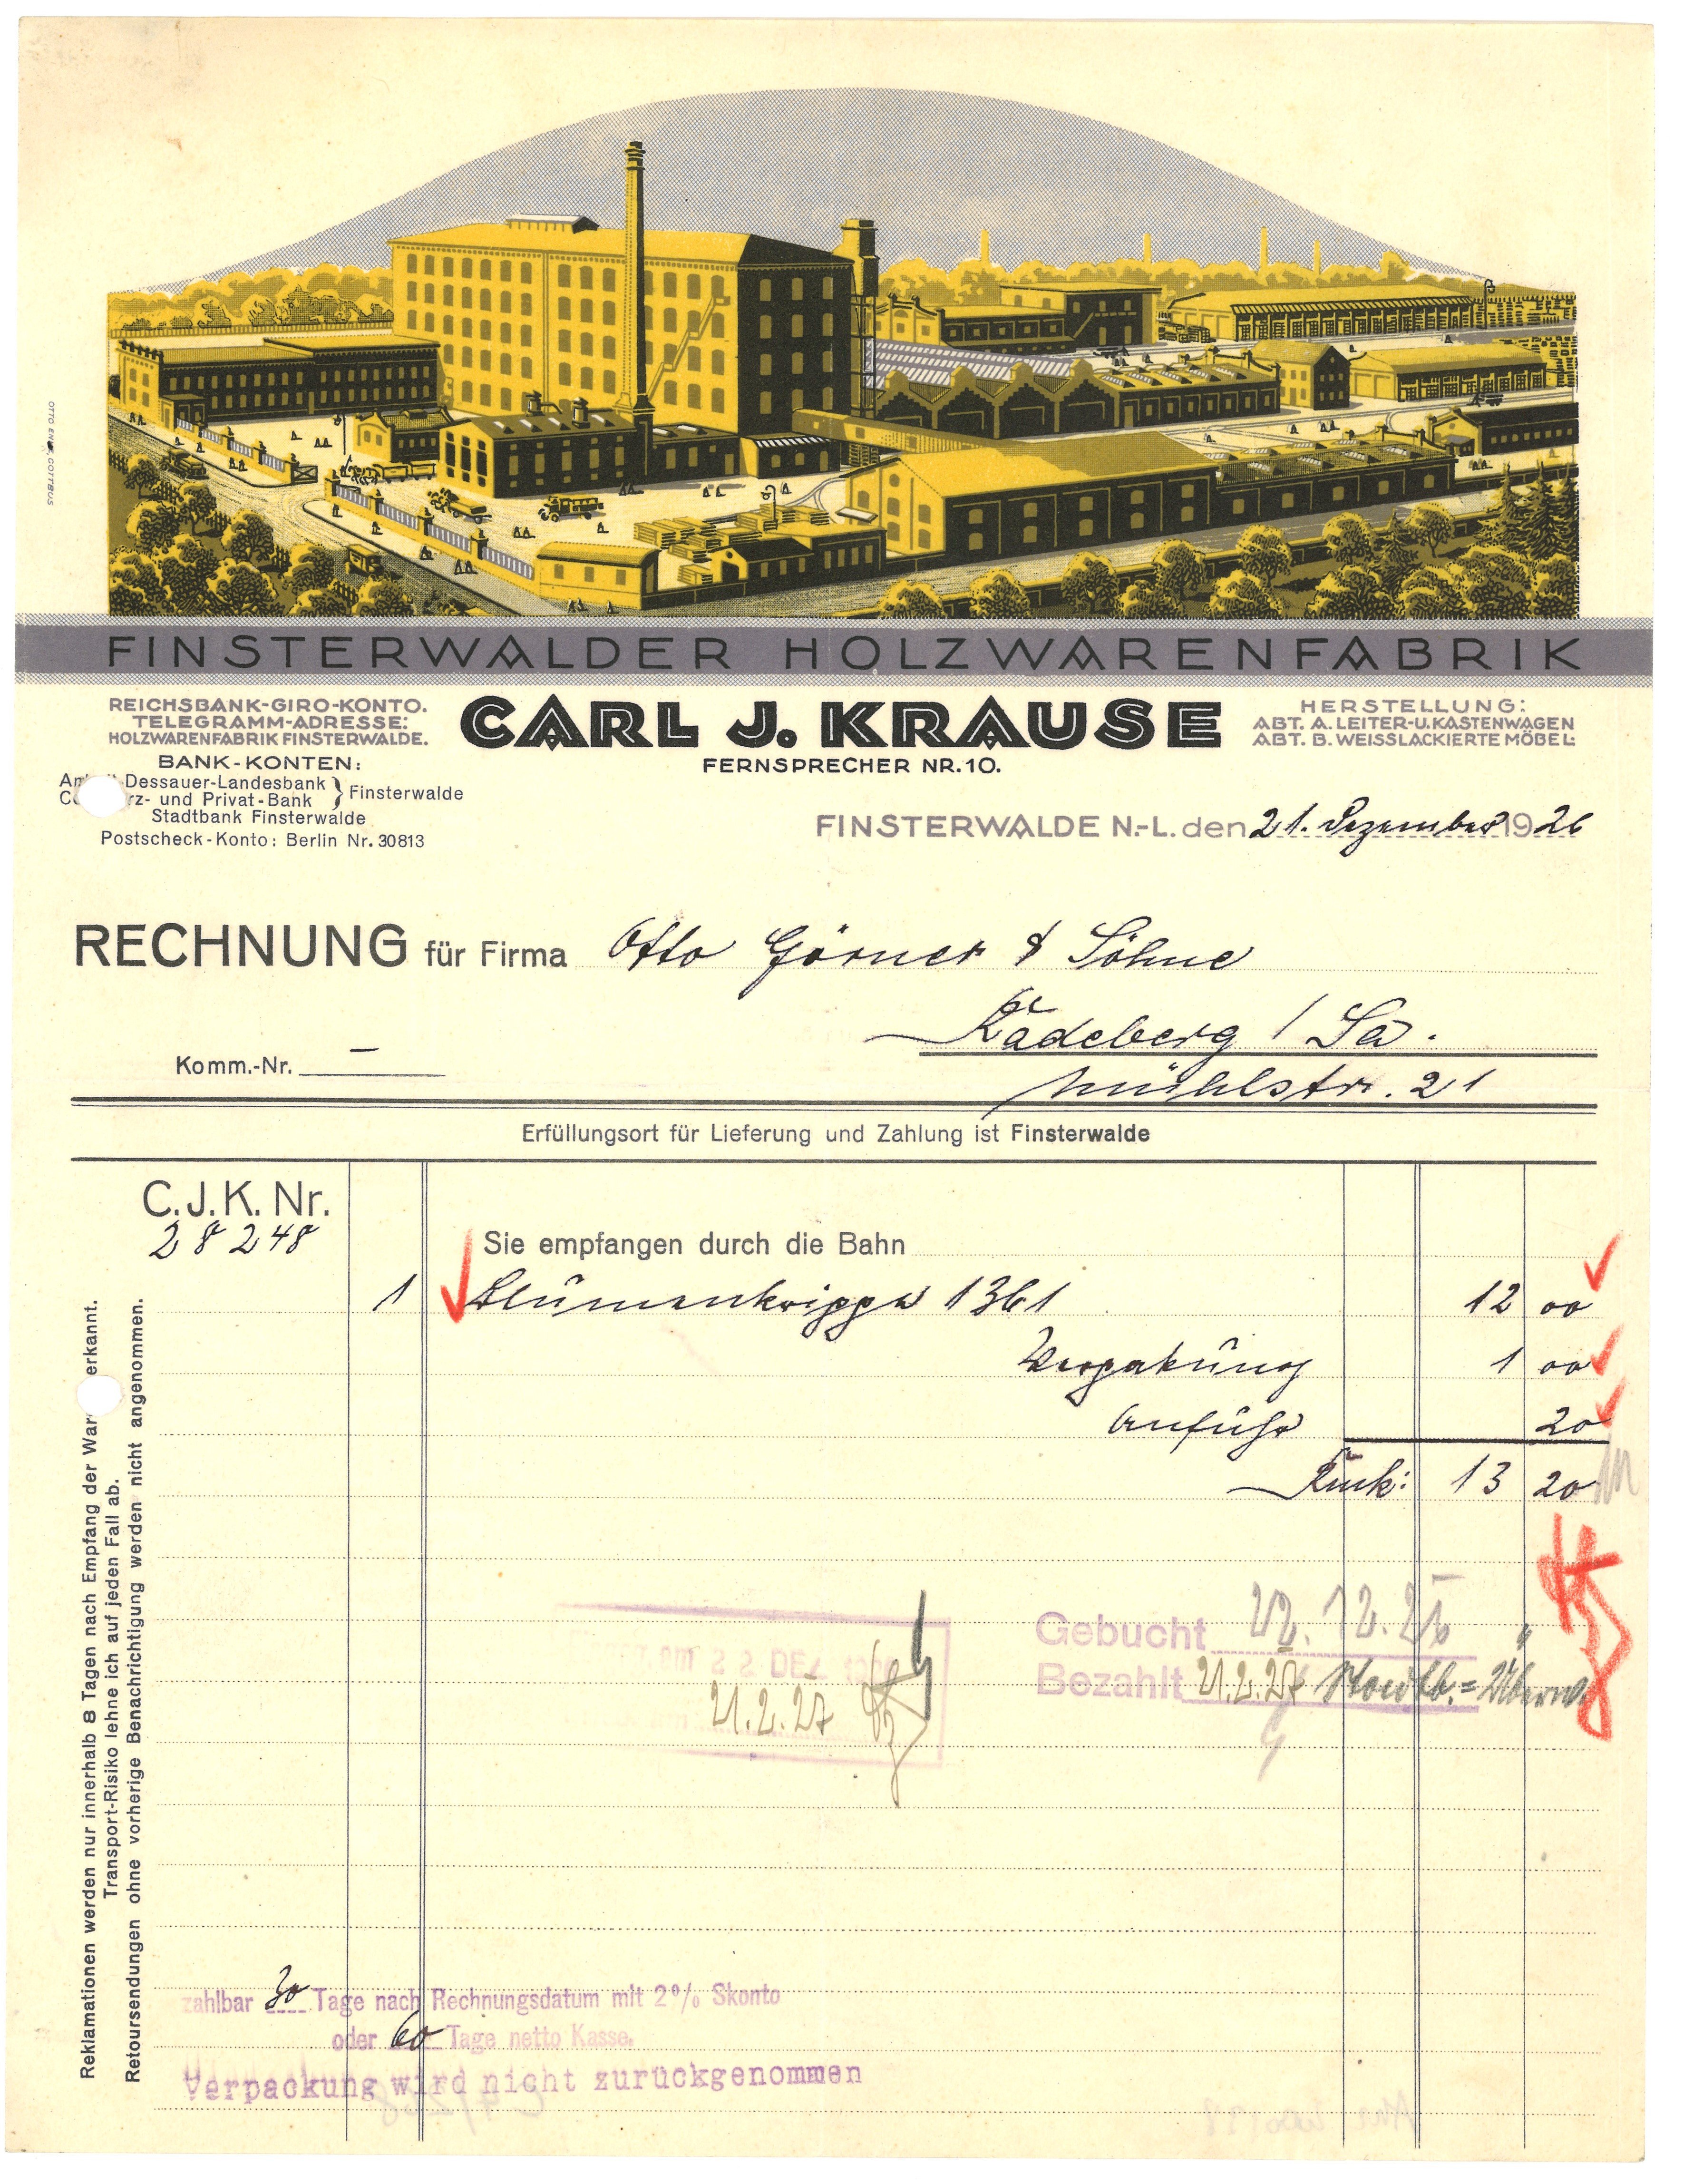 Rechnung der Finsterwalder Holzwarenfabrik Carl J. Krause 1926 (Landesgeschichtliche Vereinigung für die Mark Brandenburg e.V., Archiv CC BY)